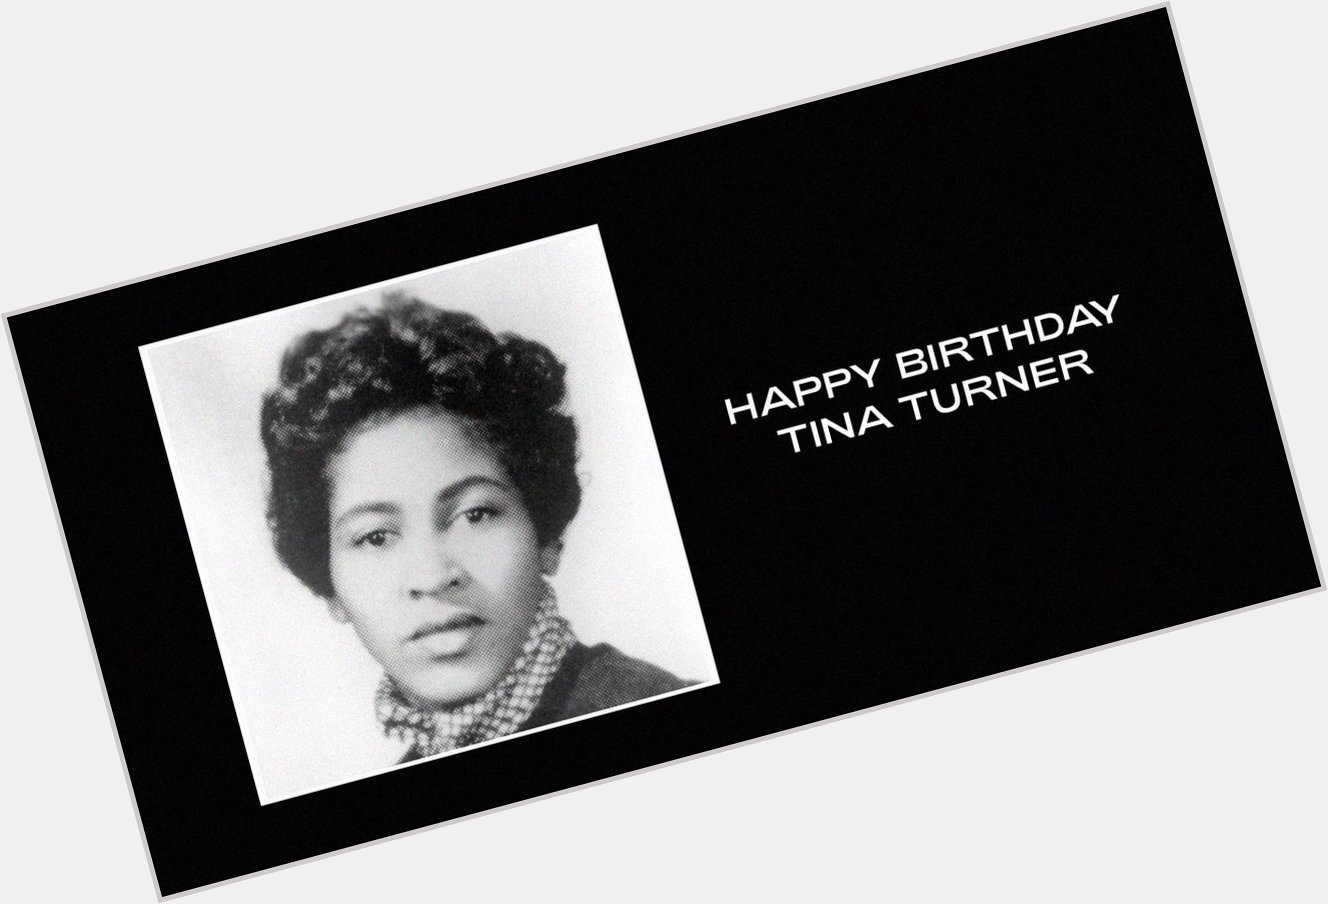  Happy Birthday Tina Turner & DJ Khaled  